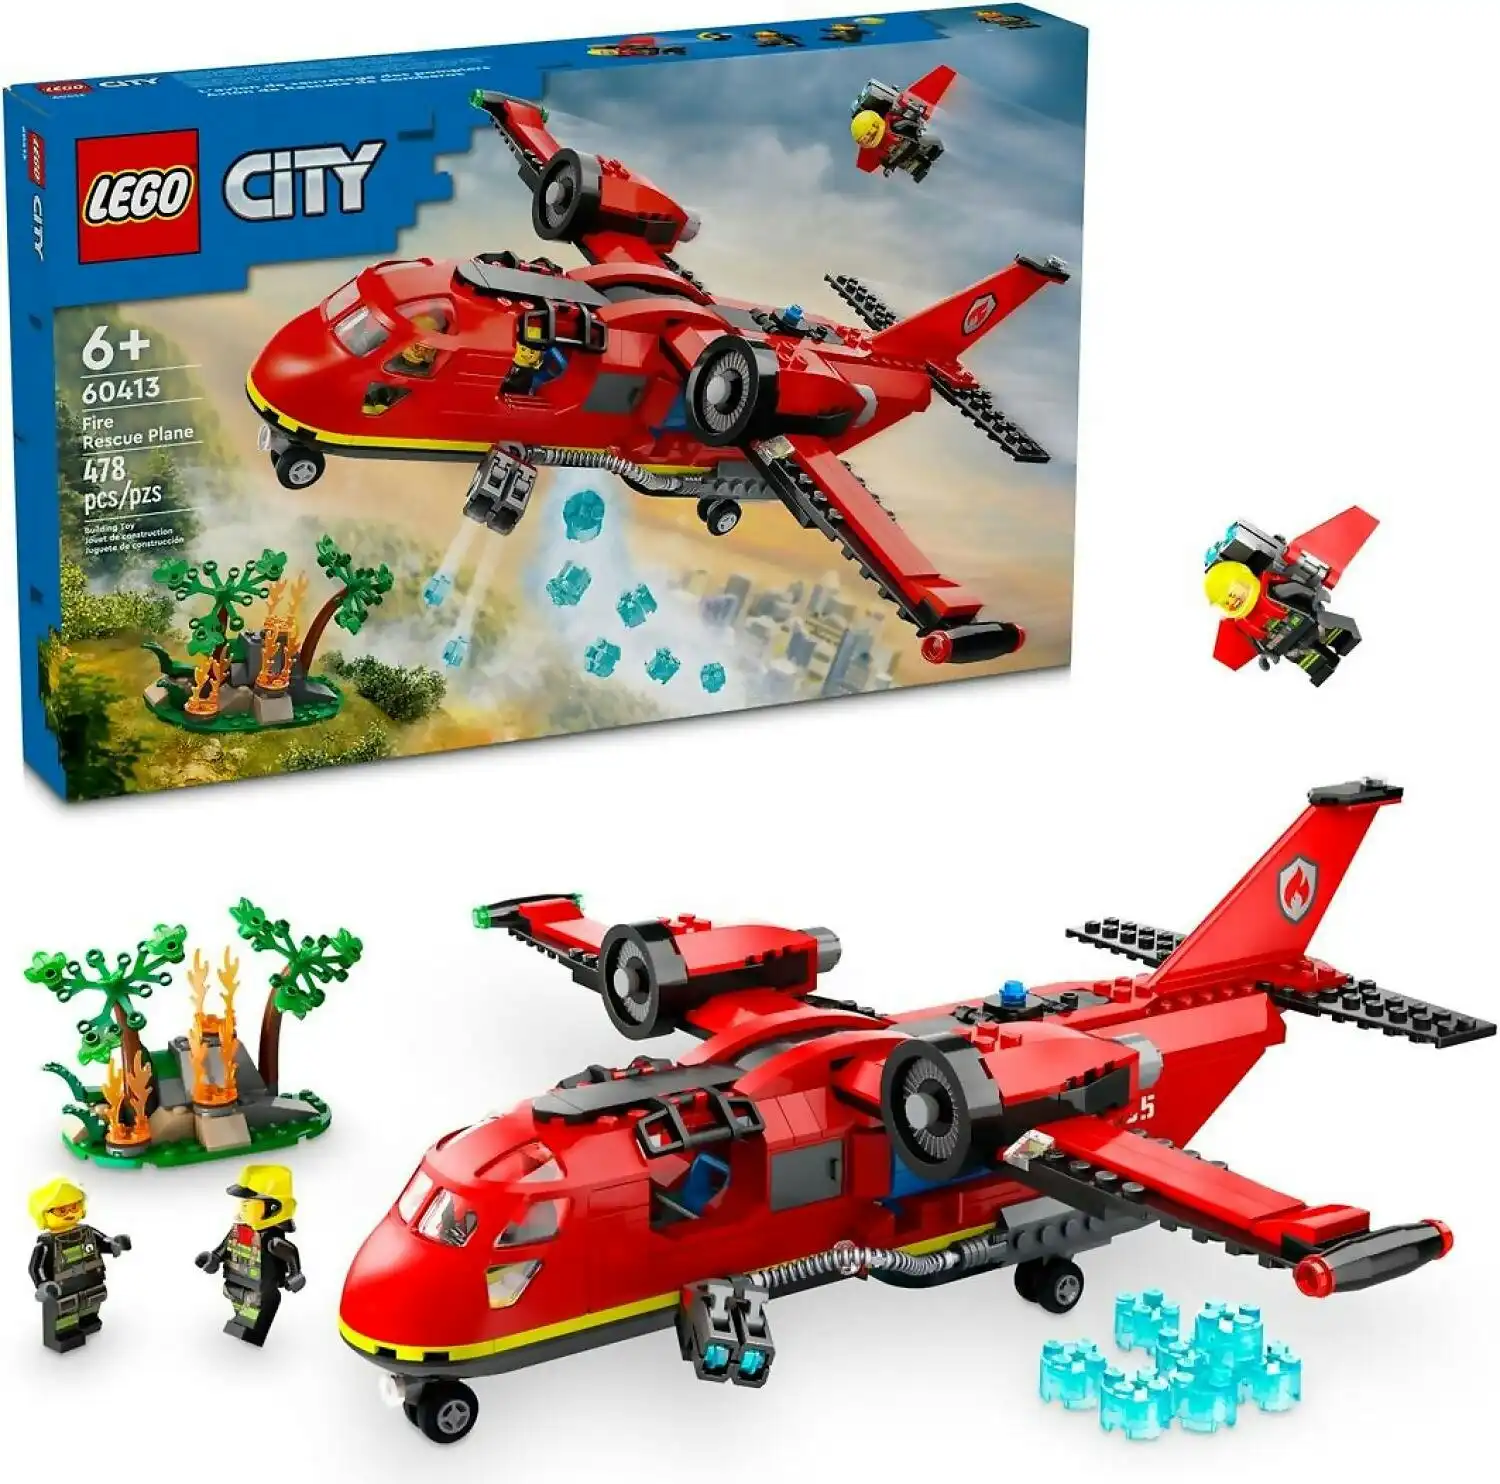 LEGO 60413 Fire Rescue Plane - City